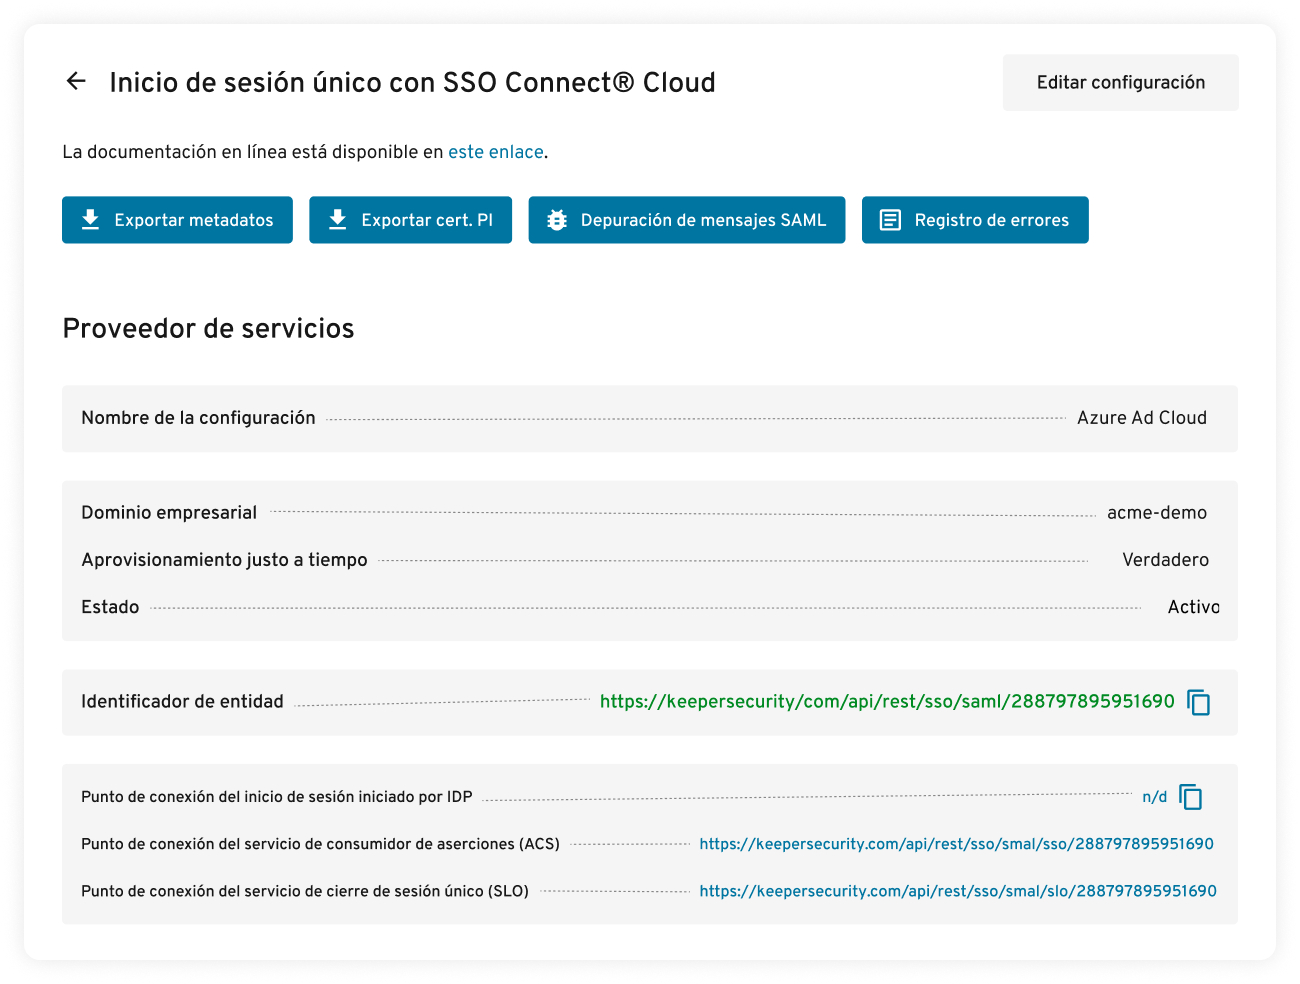 Autenticación SAML 2.0 con SSO Connect Cloud